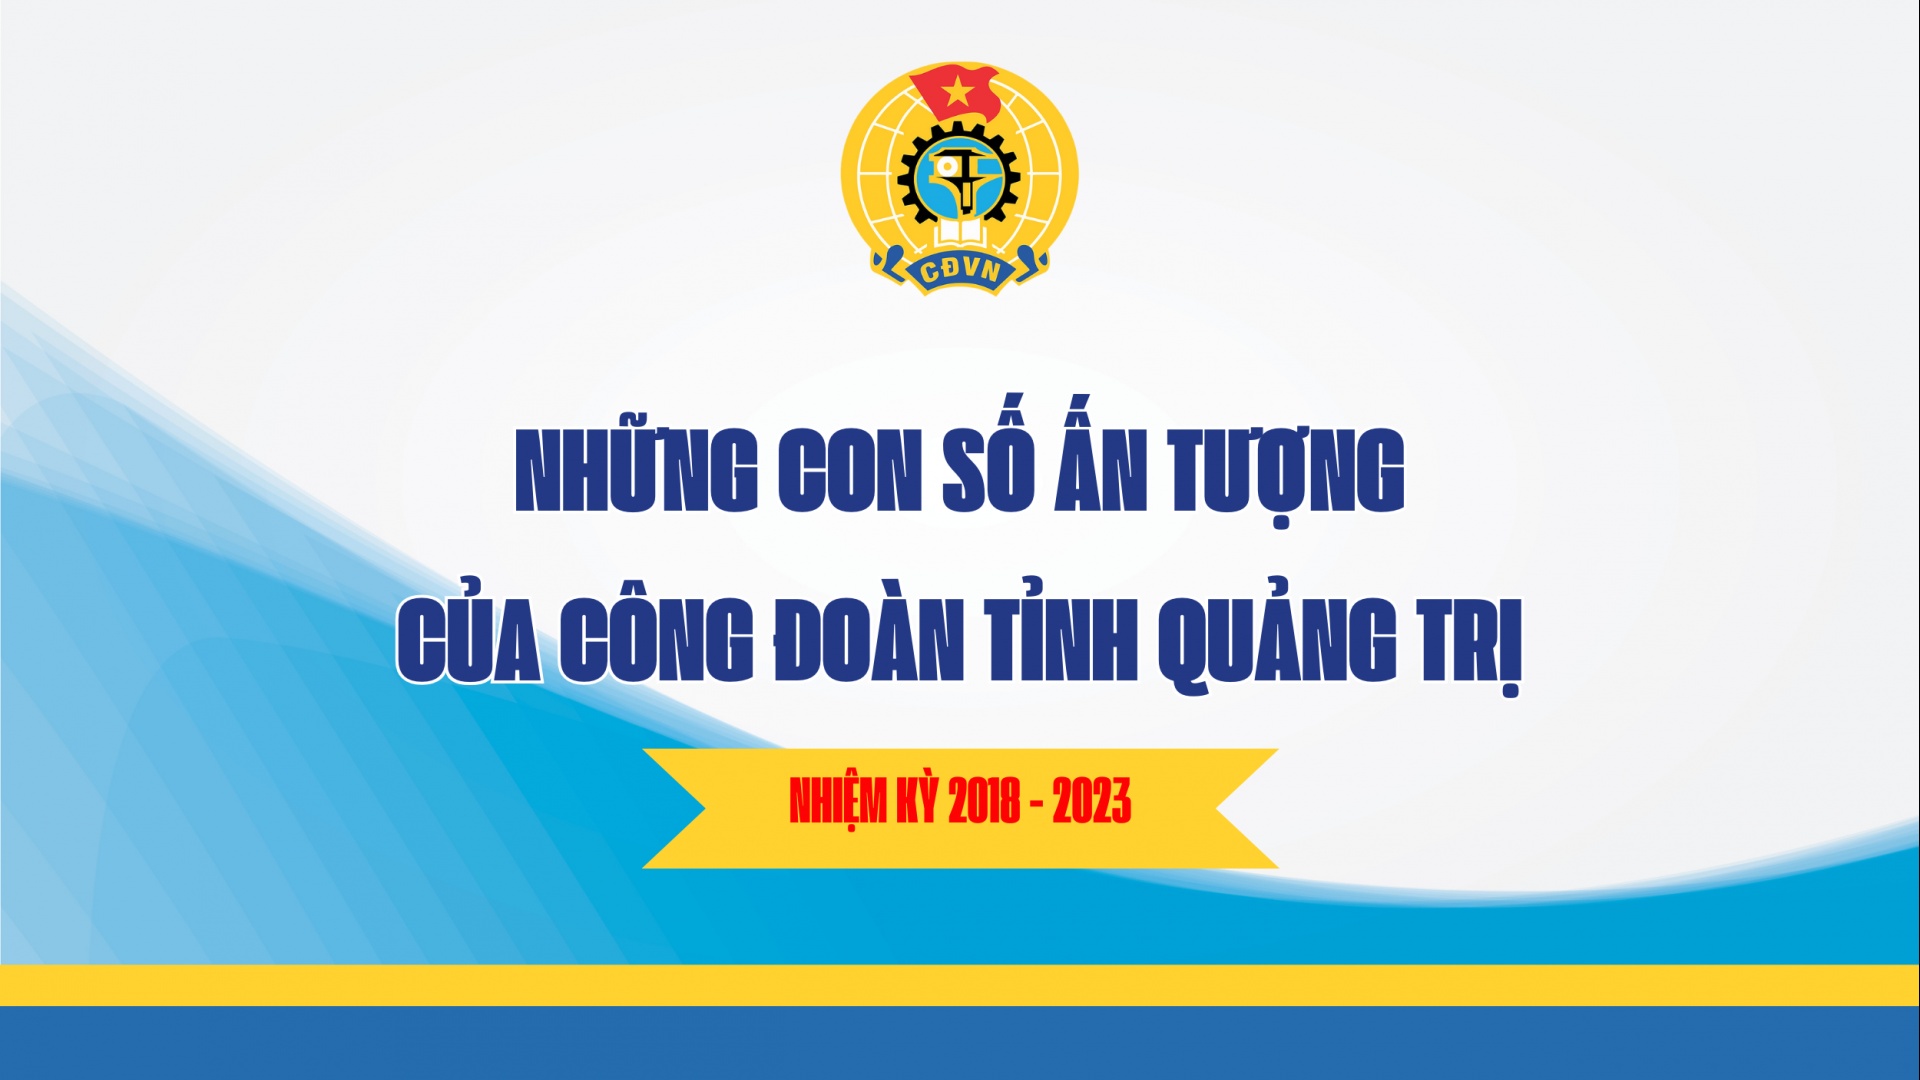 Những con số ấn tượng của Công đoàn tỉnh Quảng Trị trong nhiệm kỳ 2018 – 2023